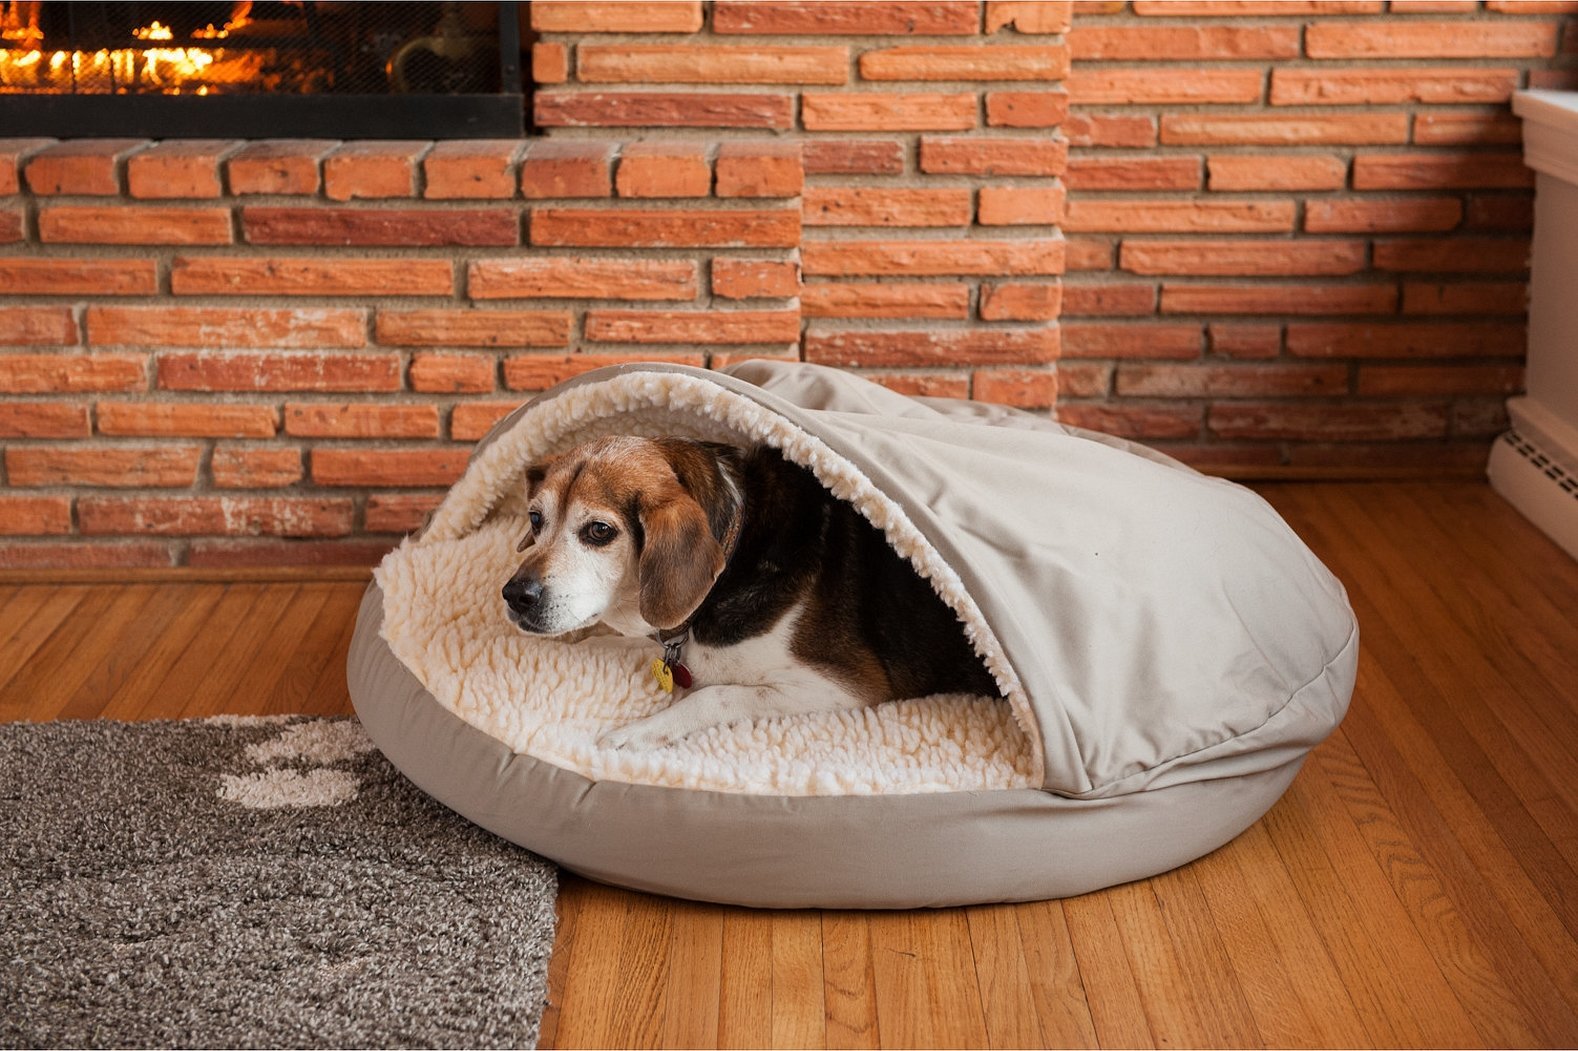 Лежанка pets. Лежак Luxury cozy Dog. Лежак для собак cozy Dog Cave. Спальное место для собаки. Лежанка-домик для большой собаки.